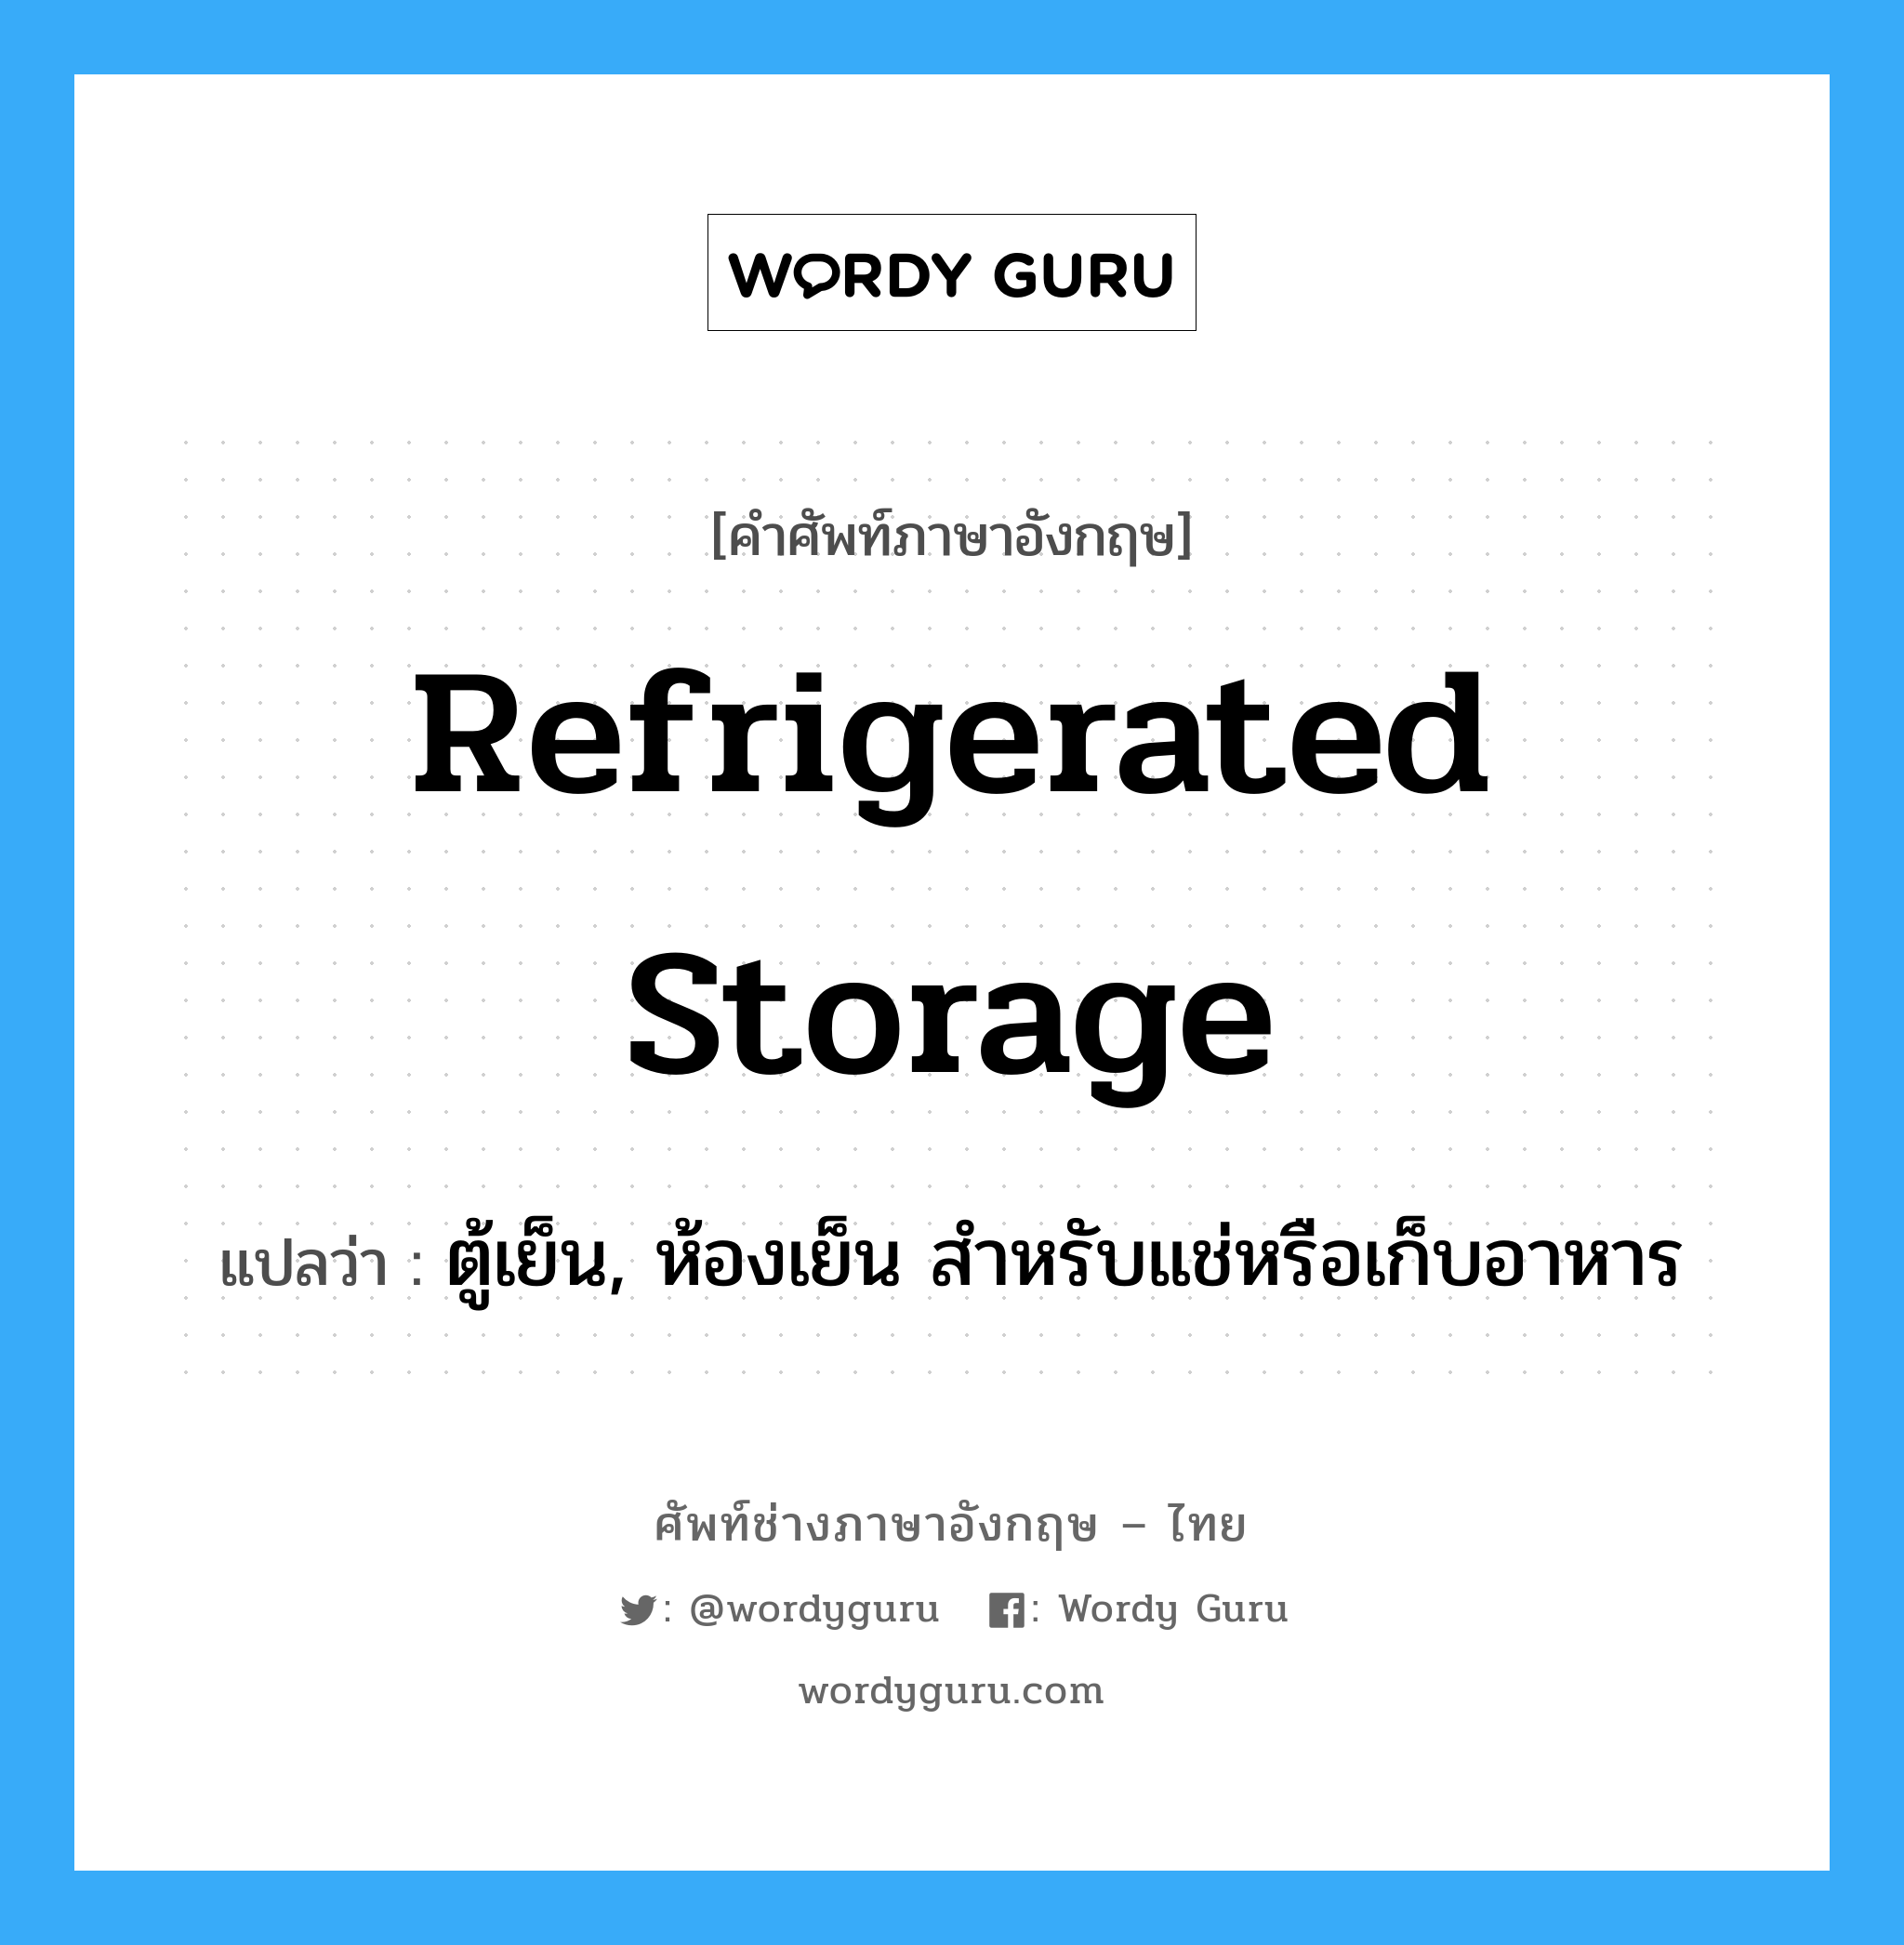 refrigerated storage แปลว่า?, คำศัพท์ช่างภาษาอังกฤษ - ไทย refrigerated storage คำศัพท์ภาษาอังกฤษ refrigerated storage แปลว่า ตู้เย็น, ห้องเย็น สำหรับแช่หรือเก็บอาหาร